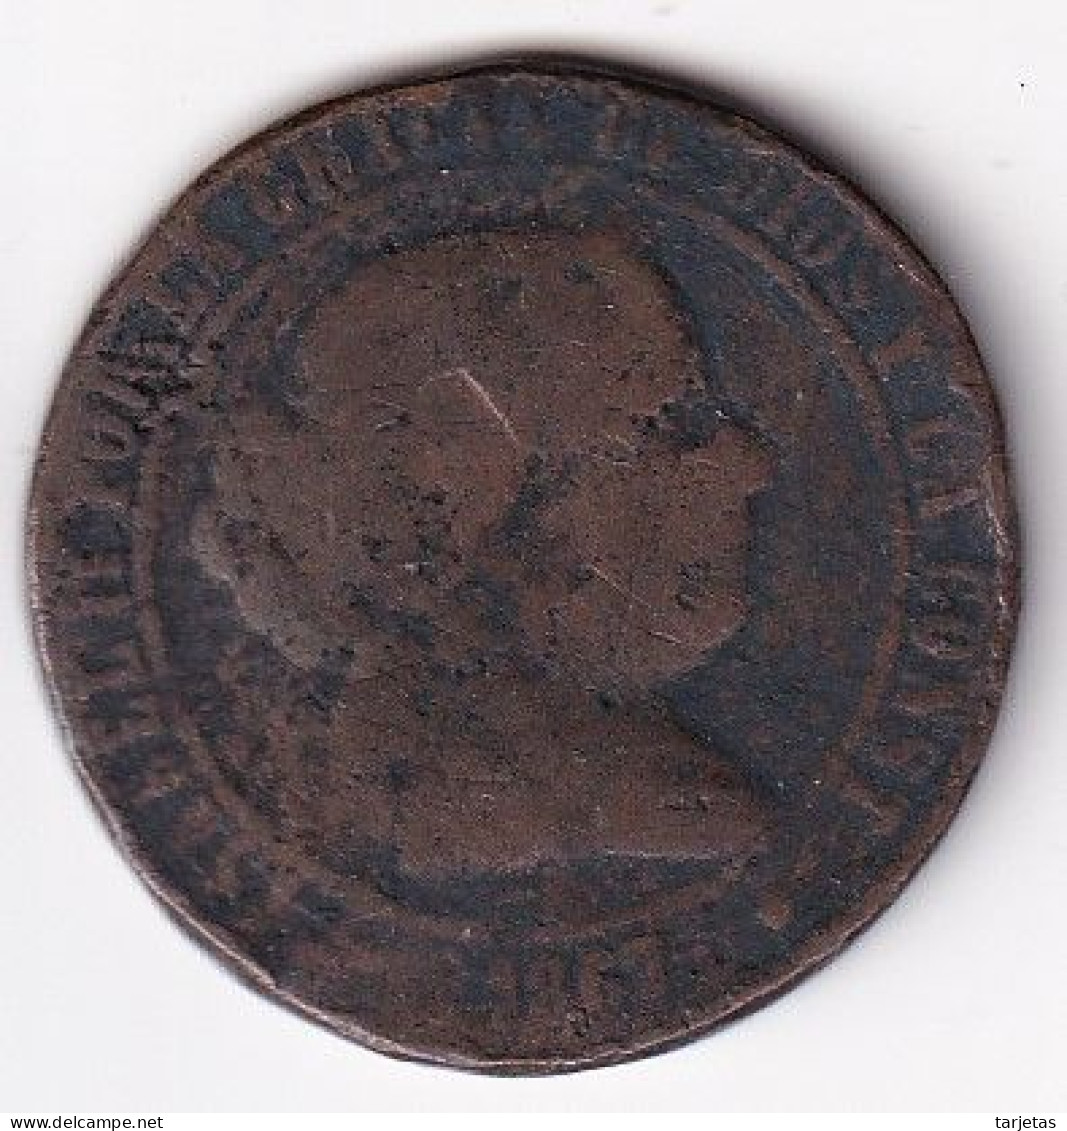 MONEDA DE ESPAÑA DE 5 CENTIMOS DE ESCUDO DE ISABEL II DEL AÑO 1867  (COIN) - Provincial Currencies